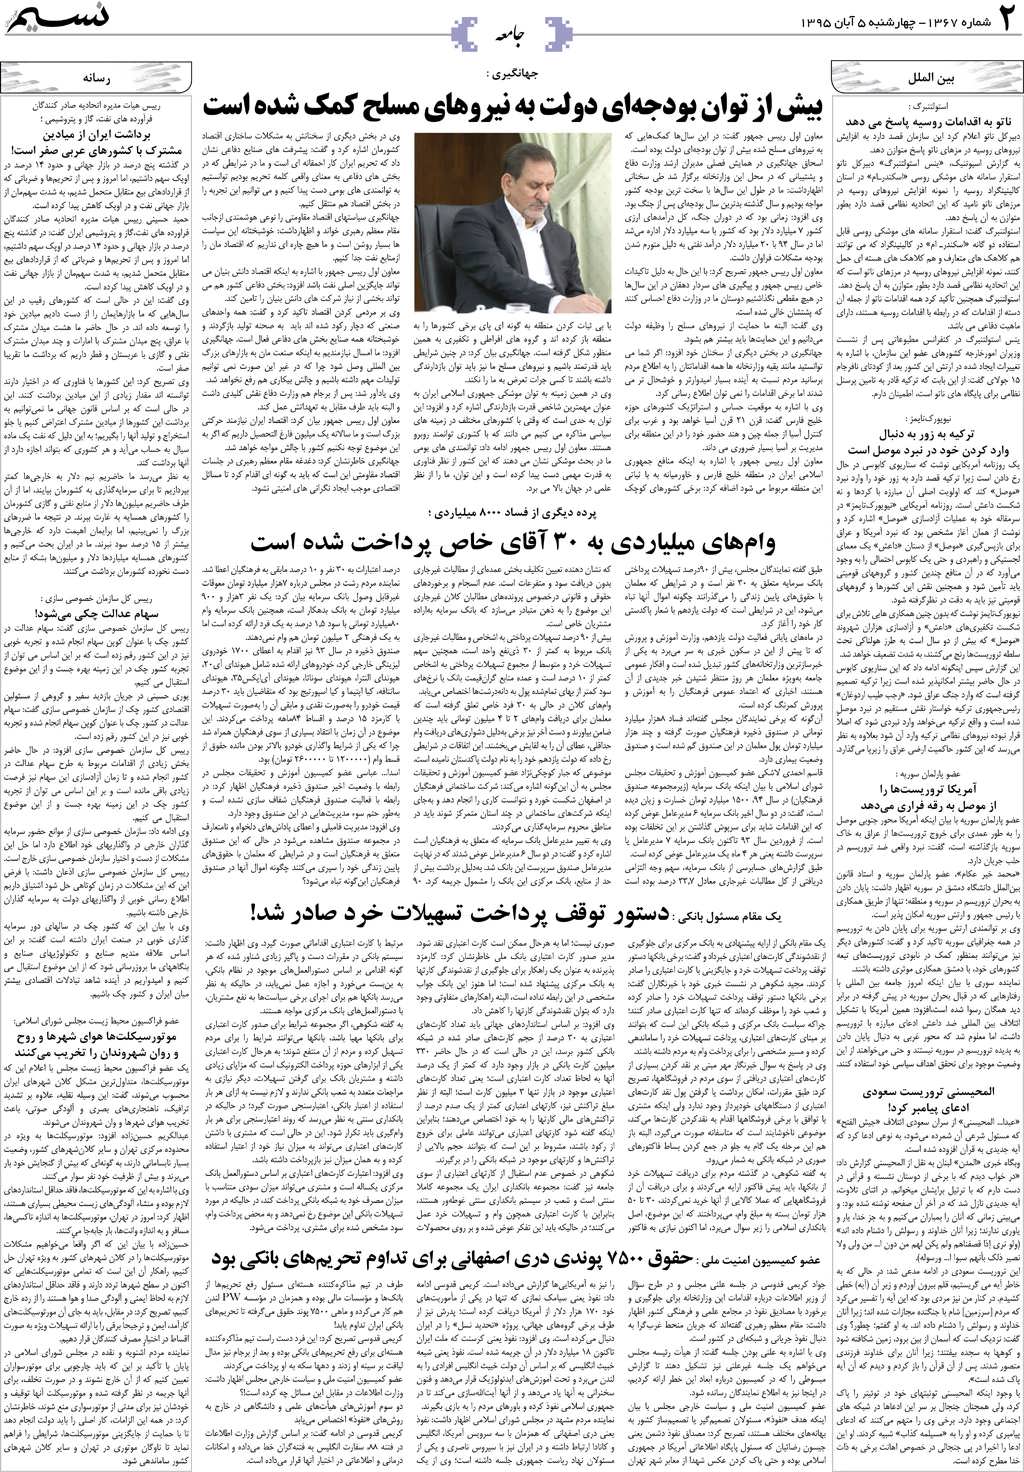 صفحه جامعه روزنامه نسیم شماره 1367